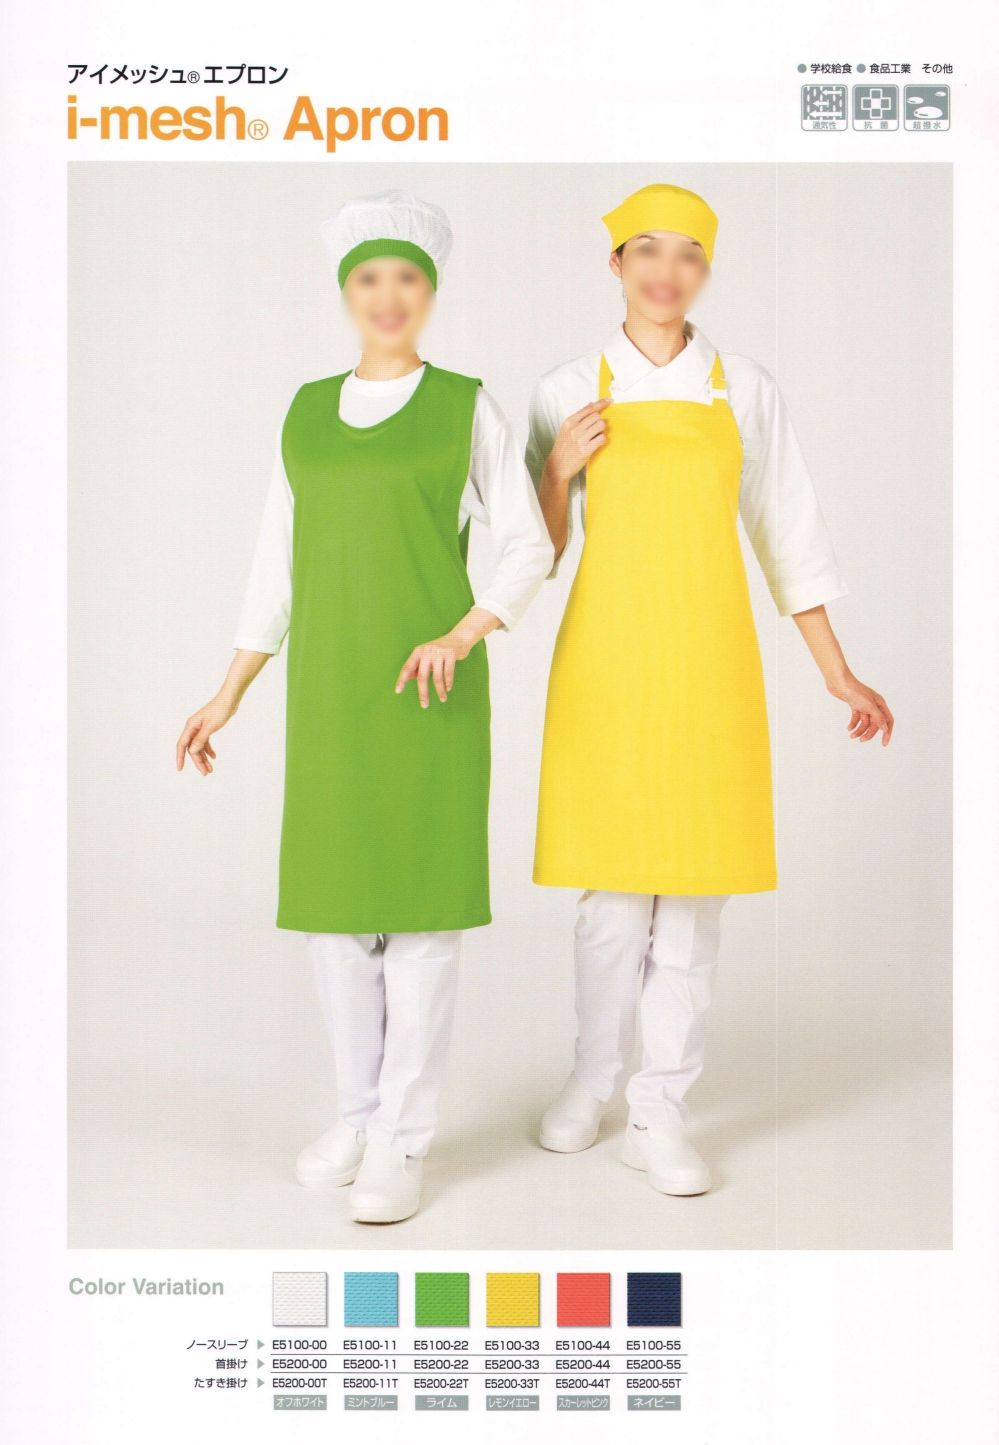 ユニフォーム1.COM 食品白衣jp 食品工場用 ワコウエプロン 2012 業務用 